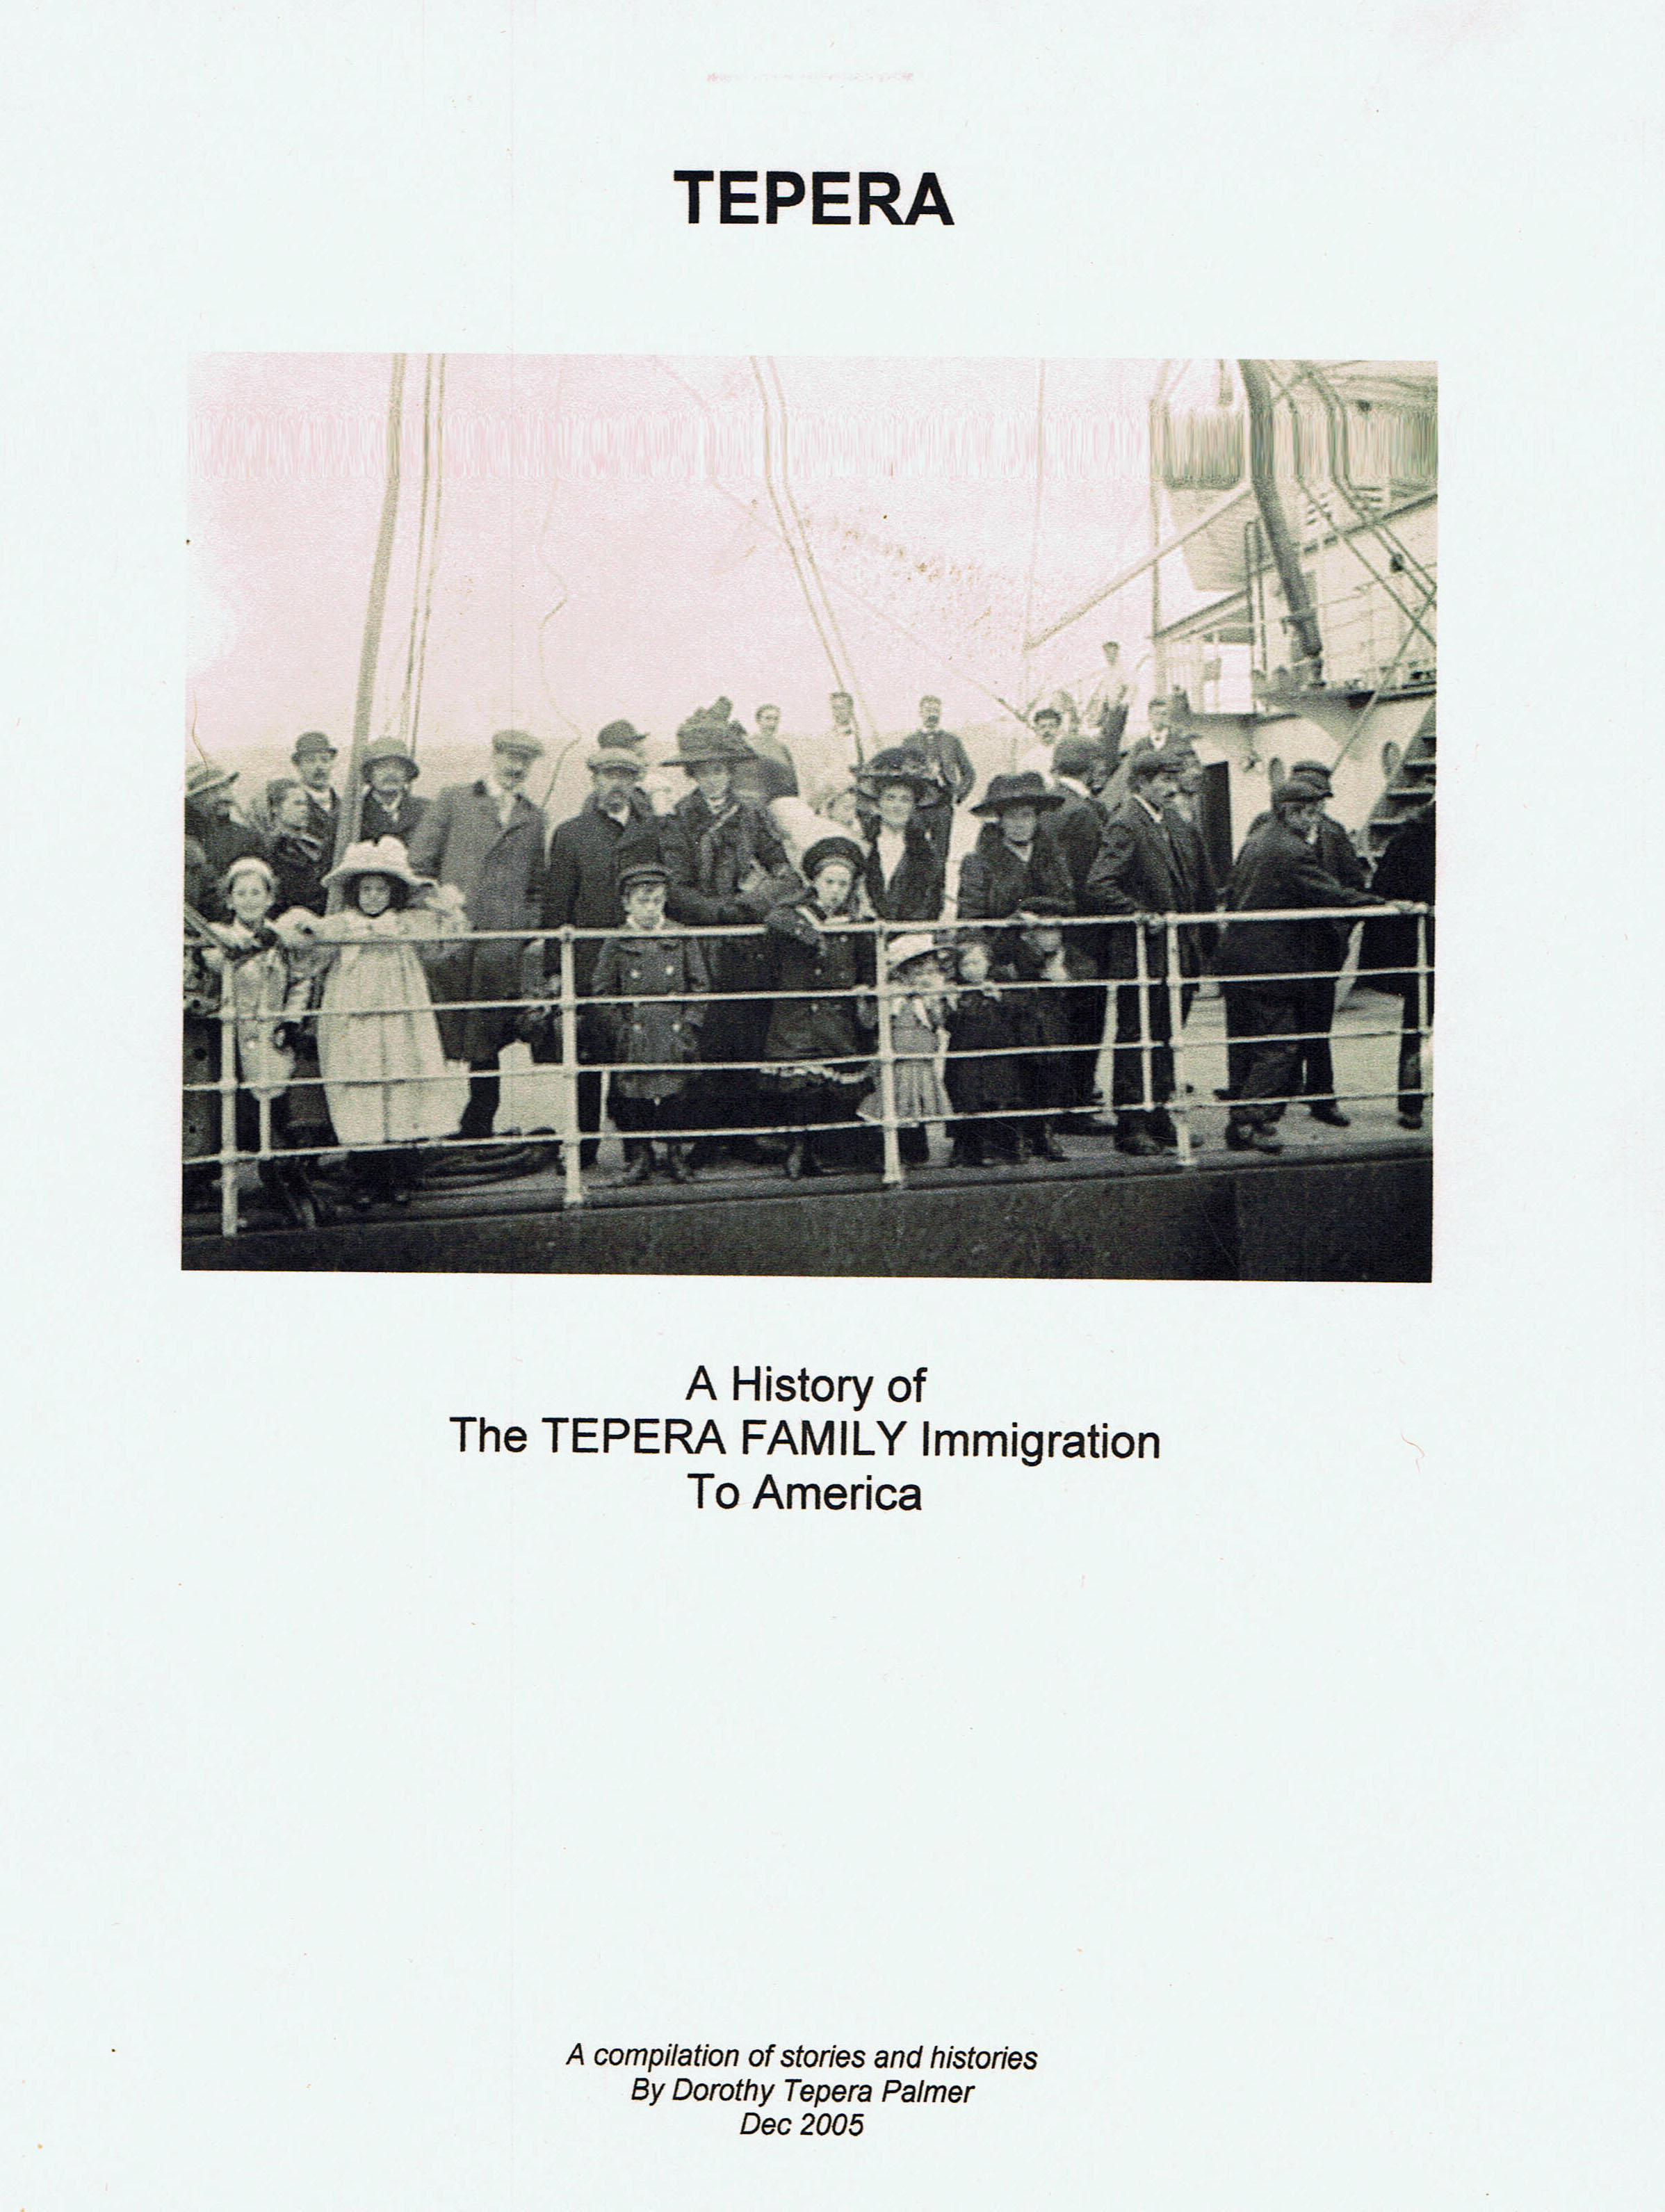 The Tepera Family History